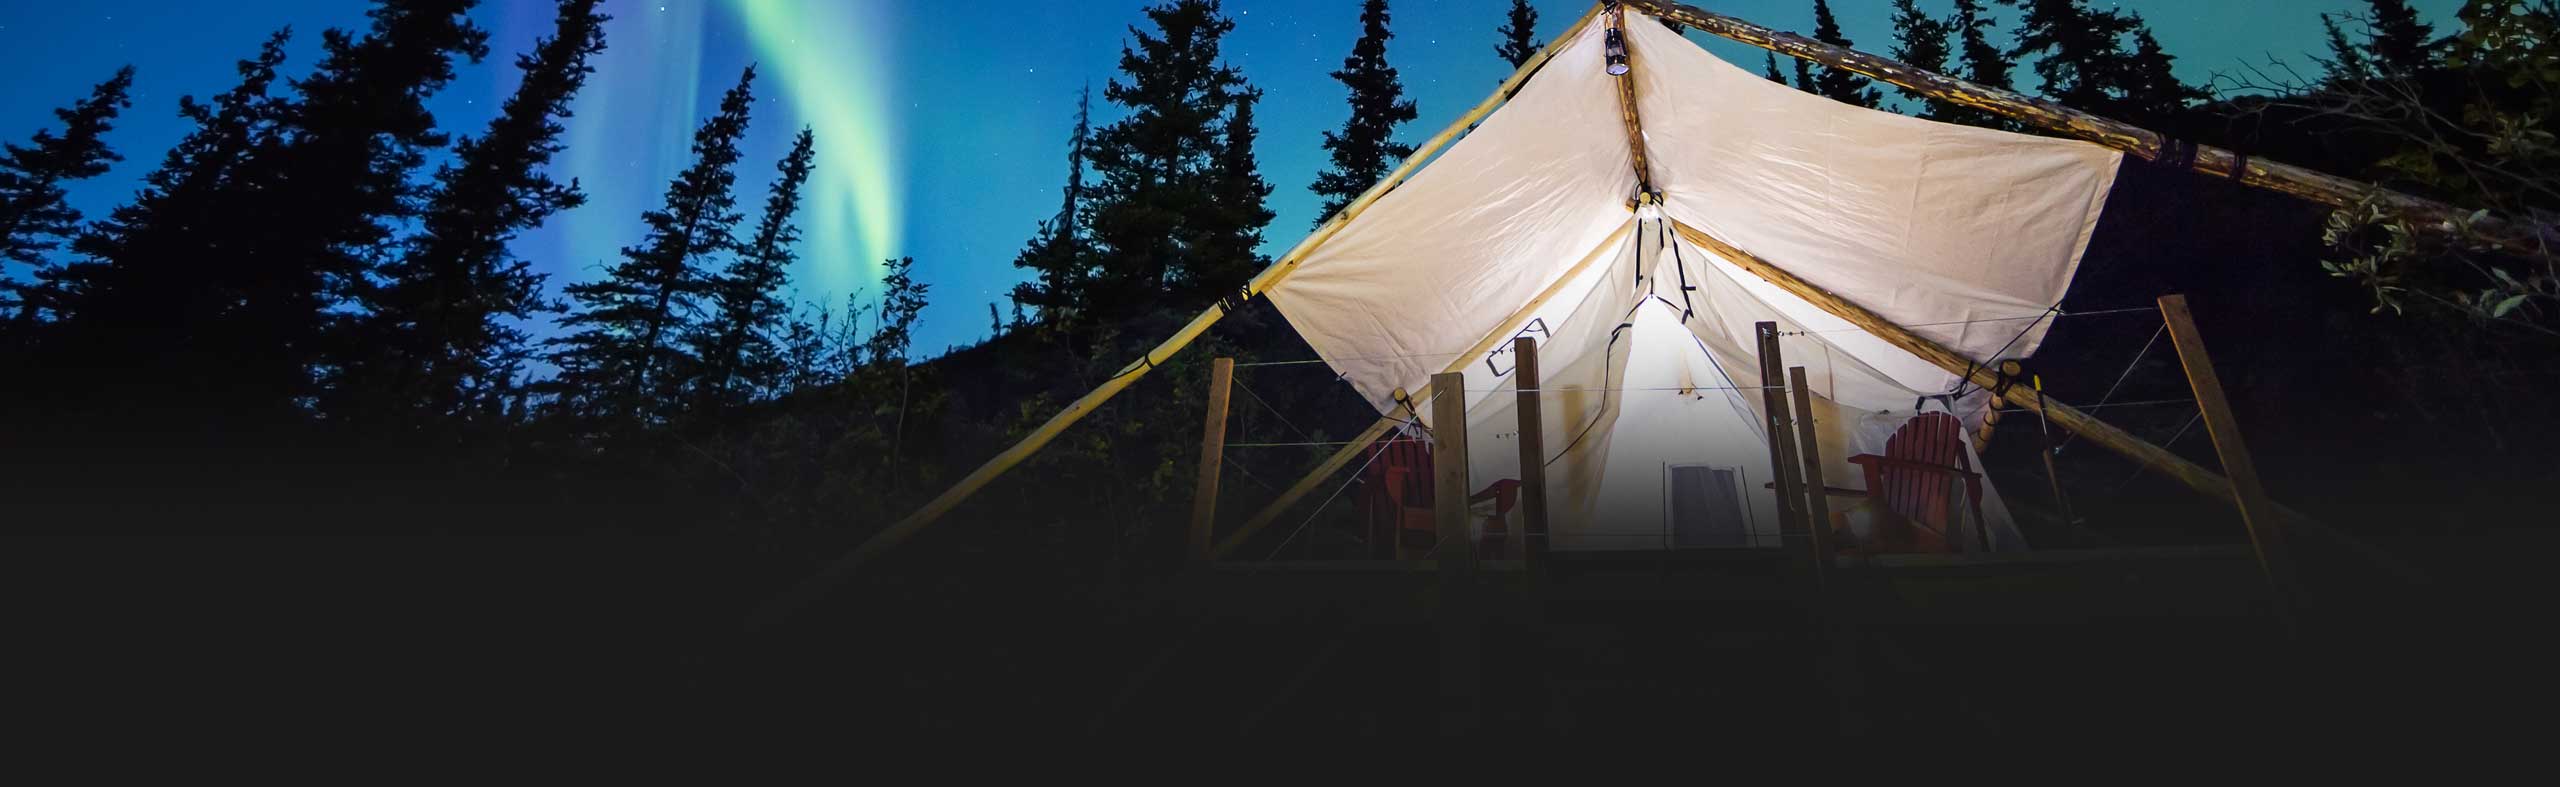 Glamping-Zelt in Alaska mit den Polarlichtern bei einer exklusiven Luxusreise